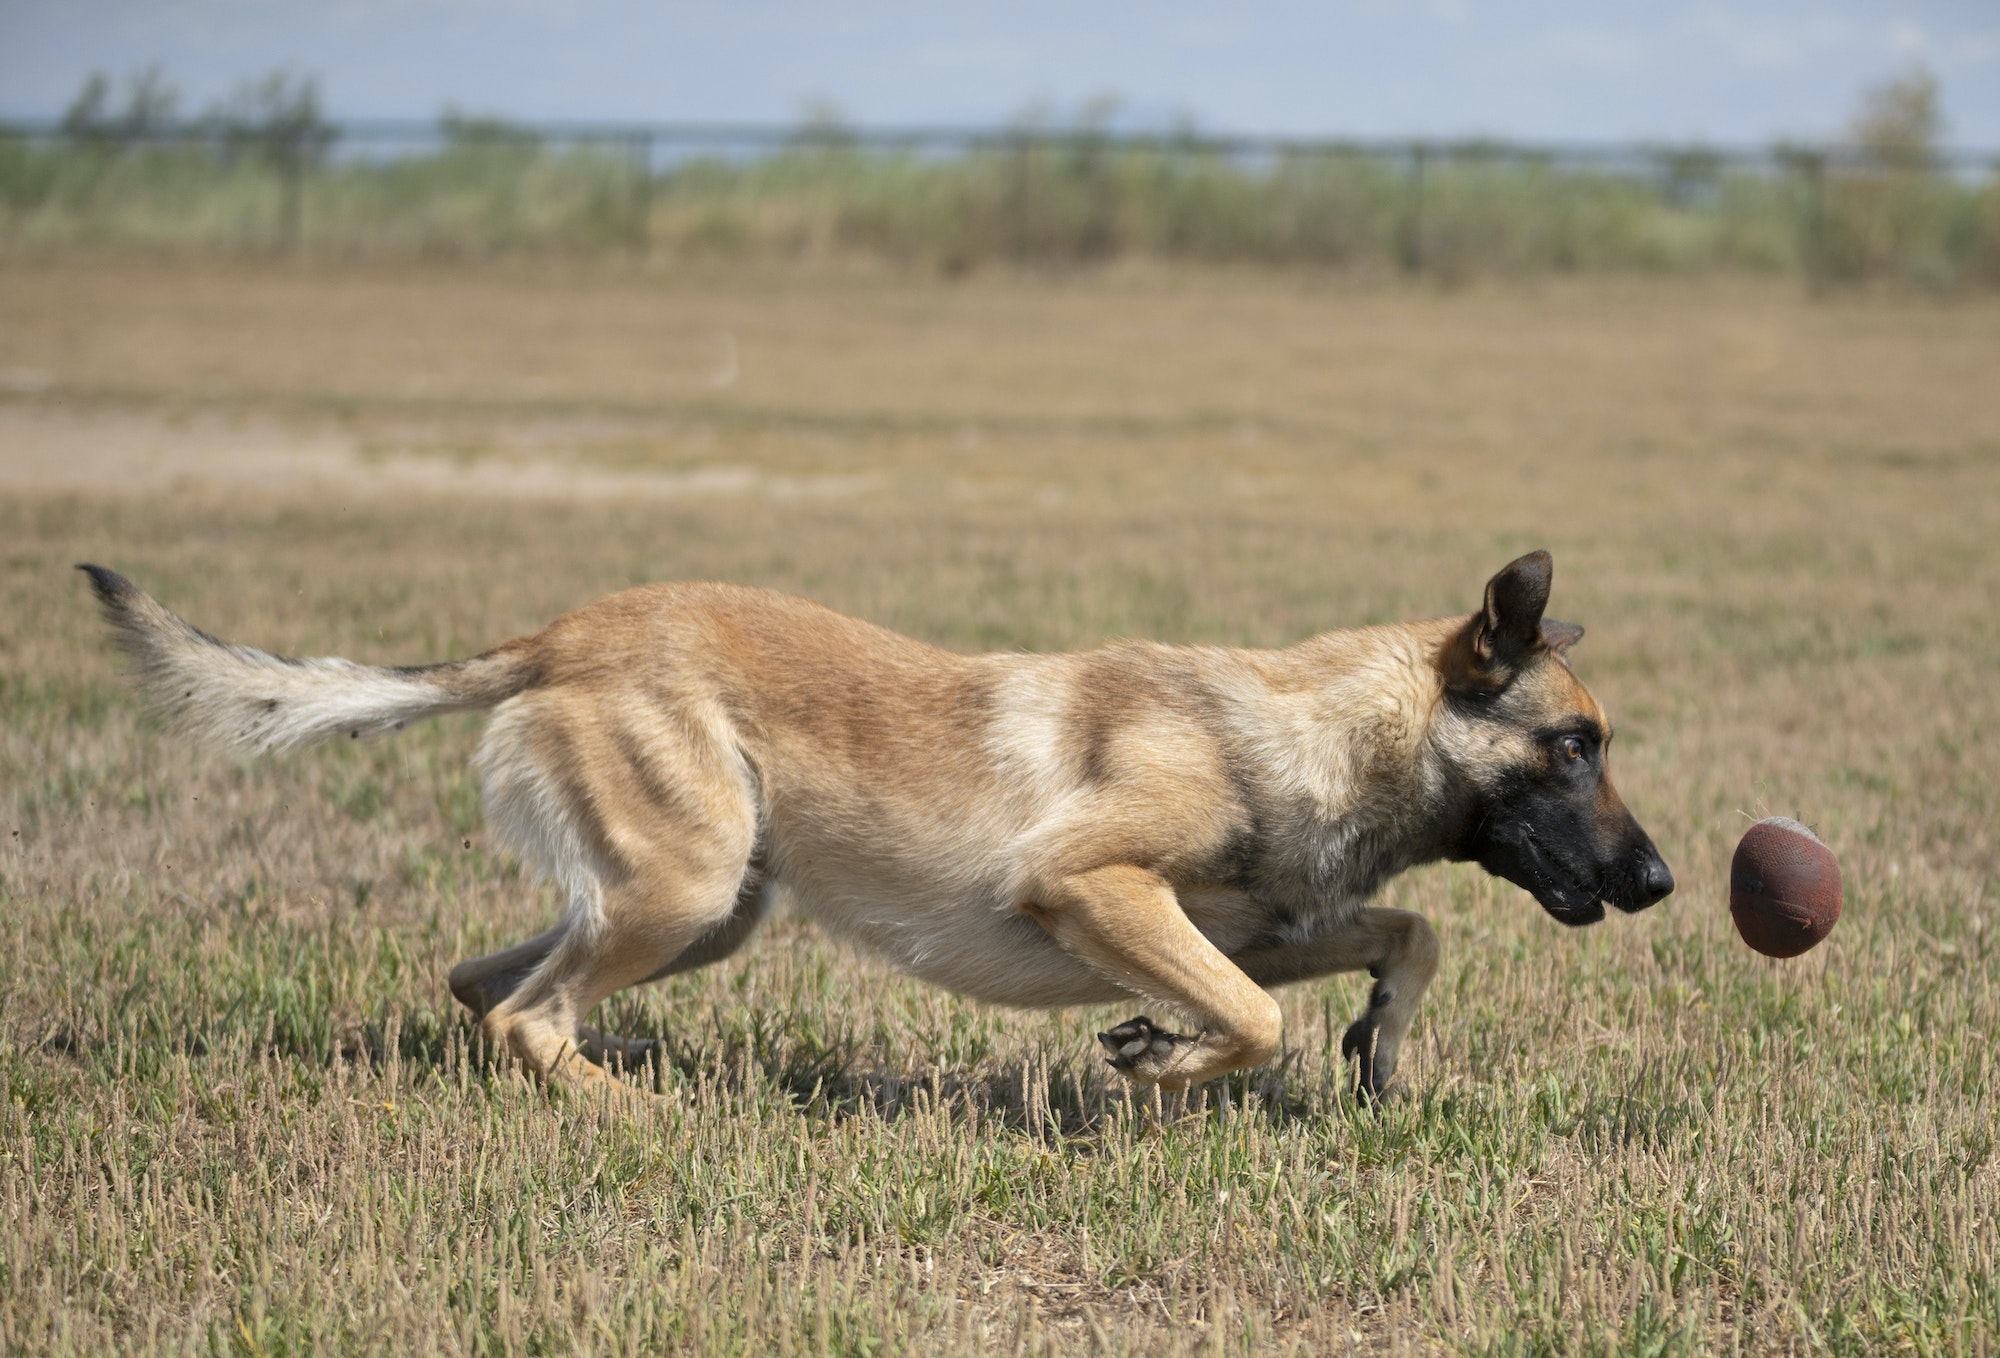 training of police dog